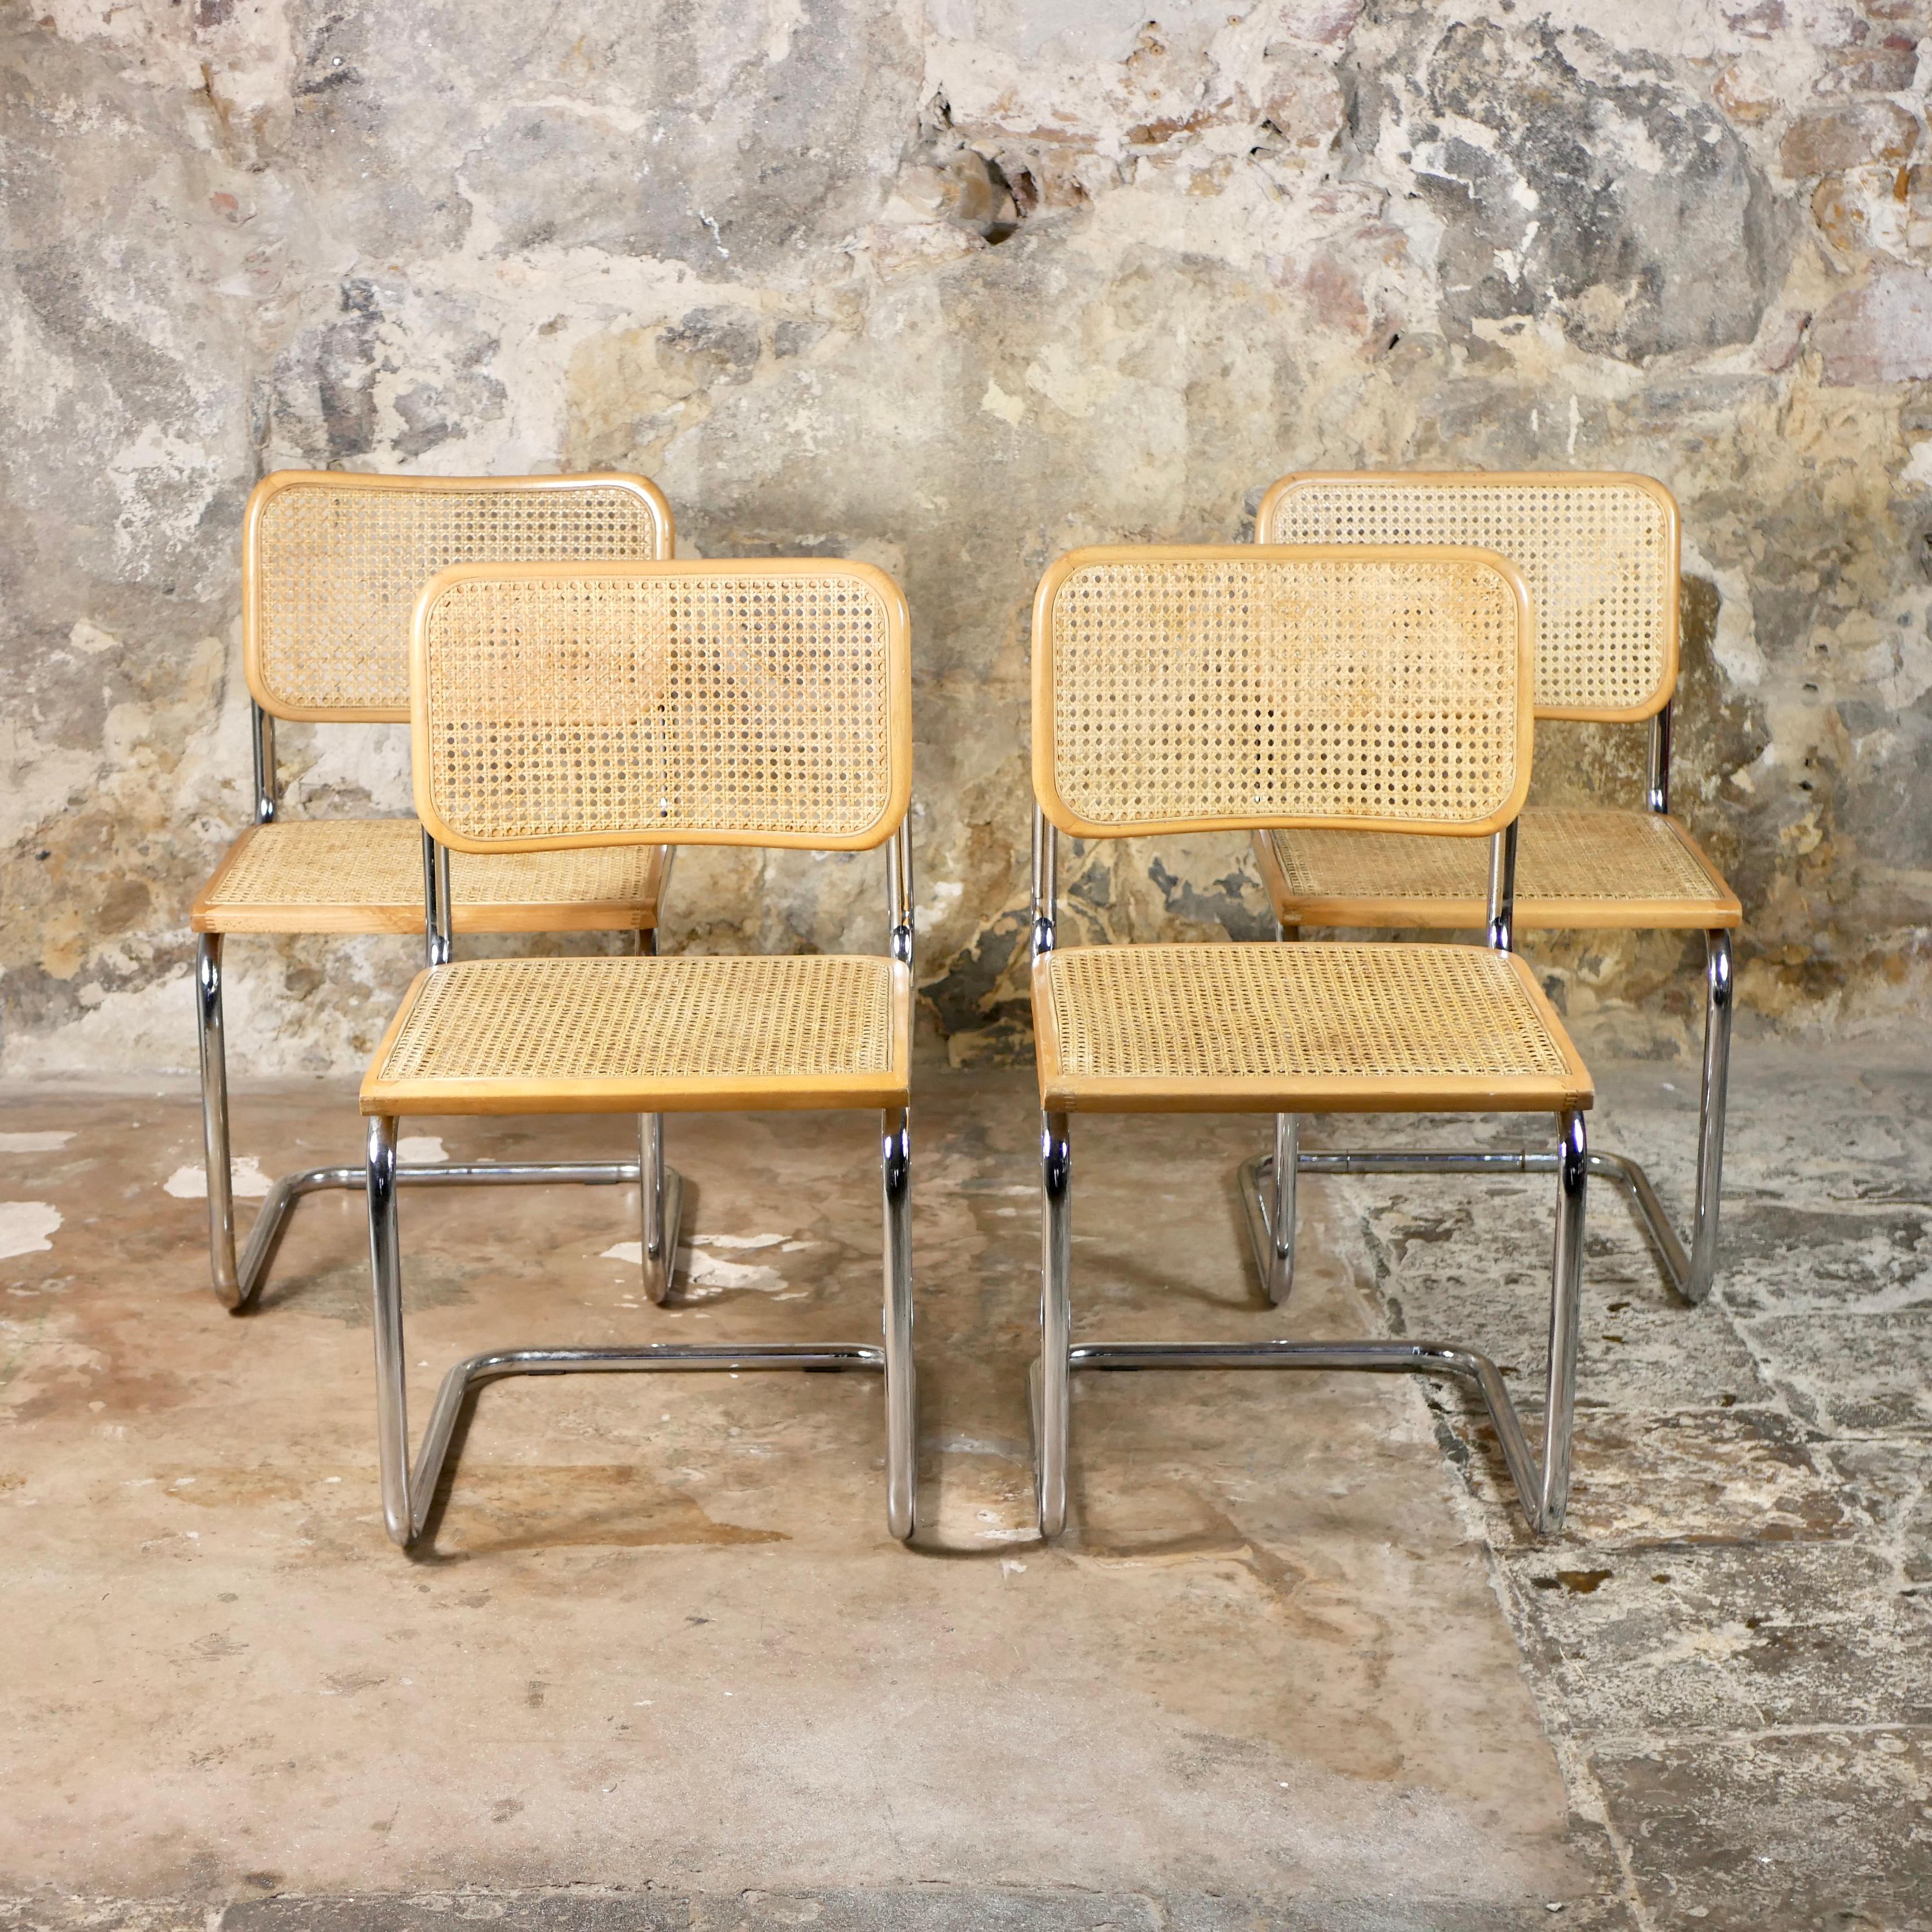 Lot de 4 chaises Cesca B32, conçues en 1928 par Marcel Breuer. 
Éditions italiennes des années 1970
Bois de hêtre naturel et canne.
Bon état général, légères traces du temps.
